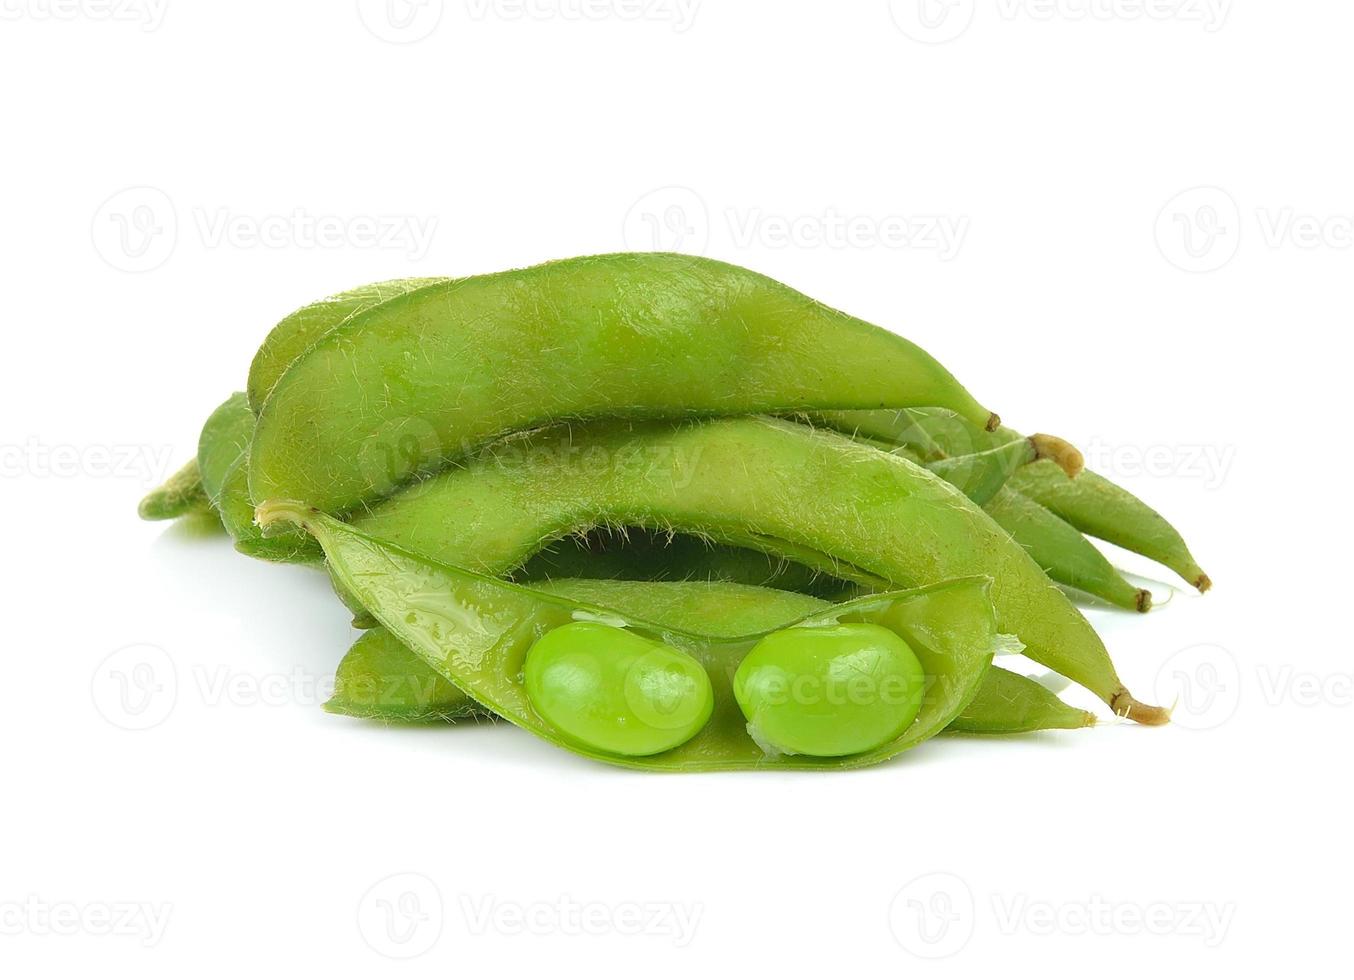 semi di soia verdi su sfondo bianco foto